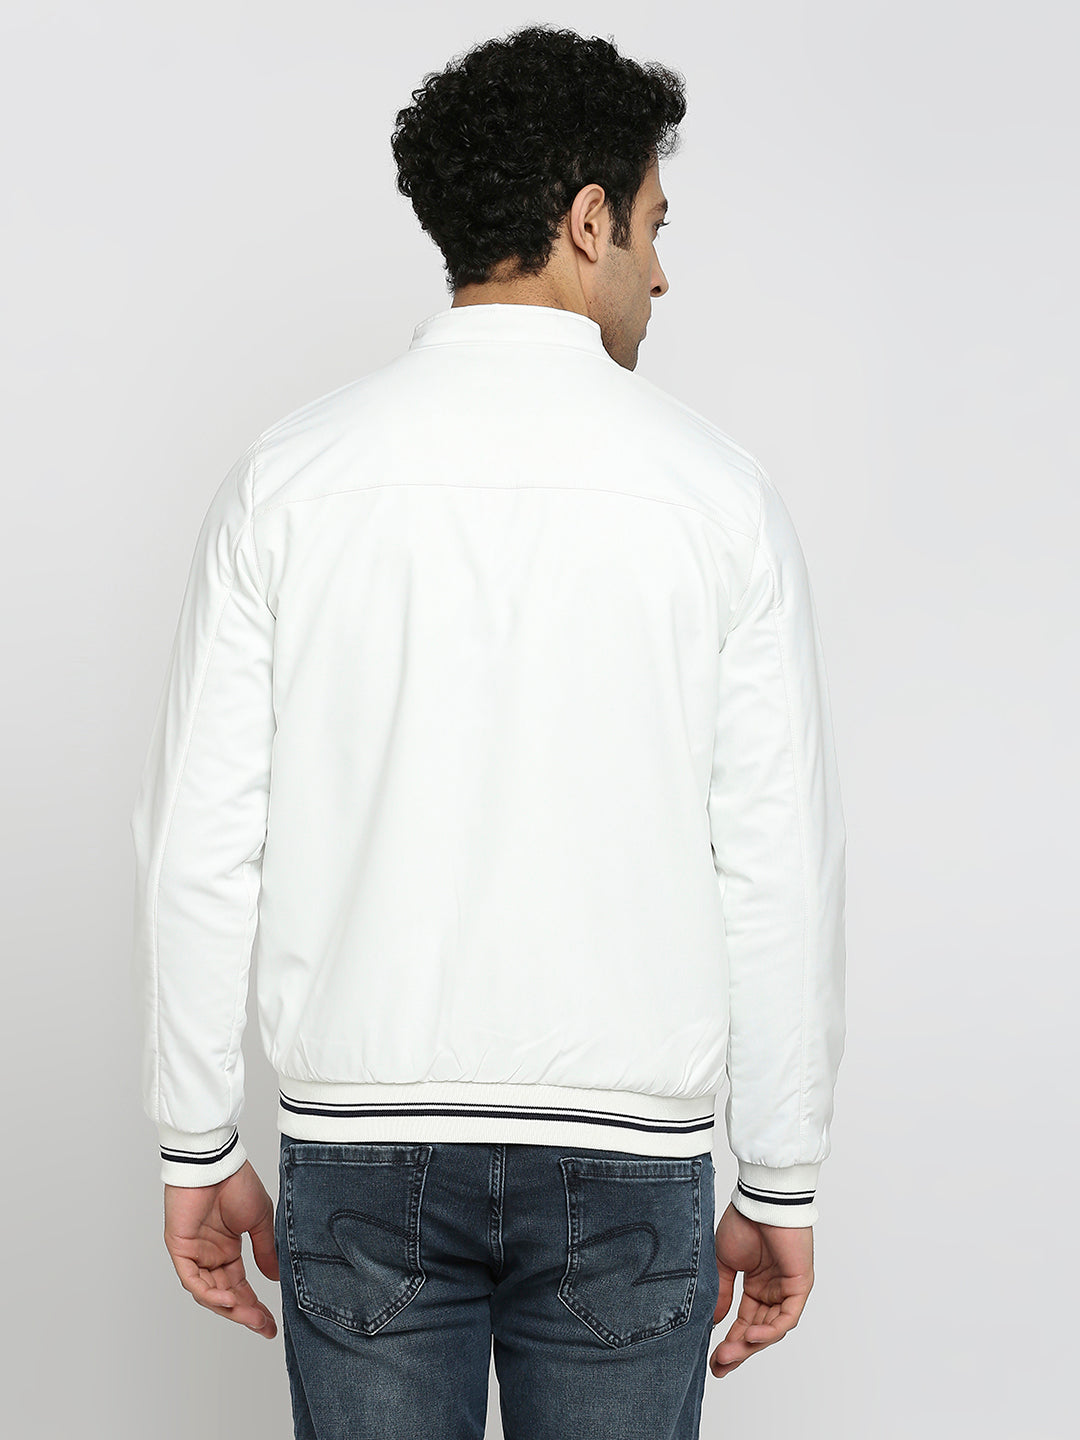 Buy Online|Spykar Women White Slim Fit High Neck Plain Crop Jacket